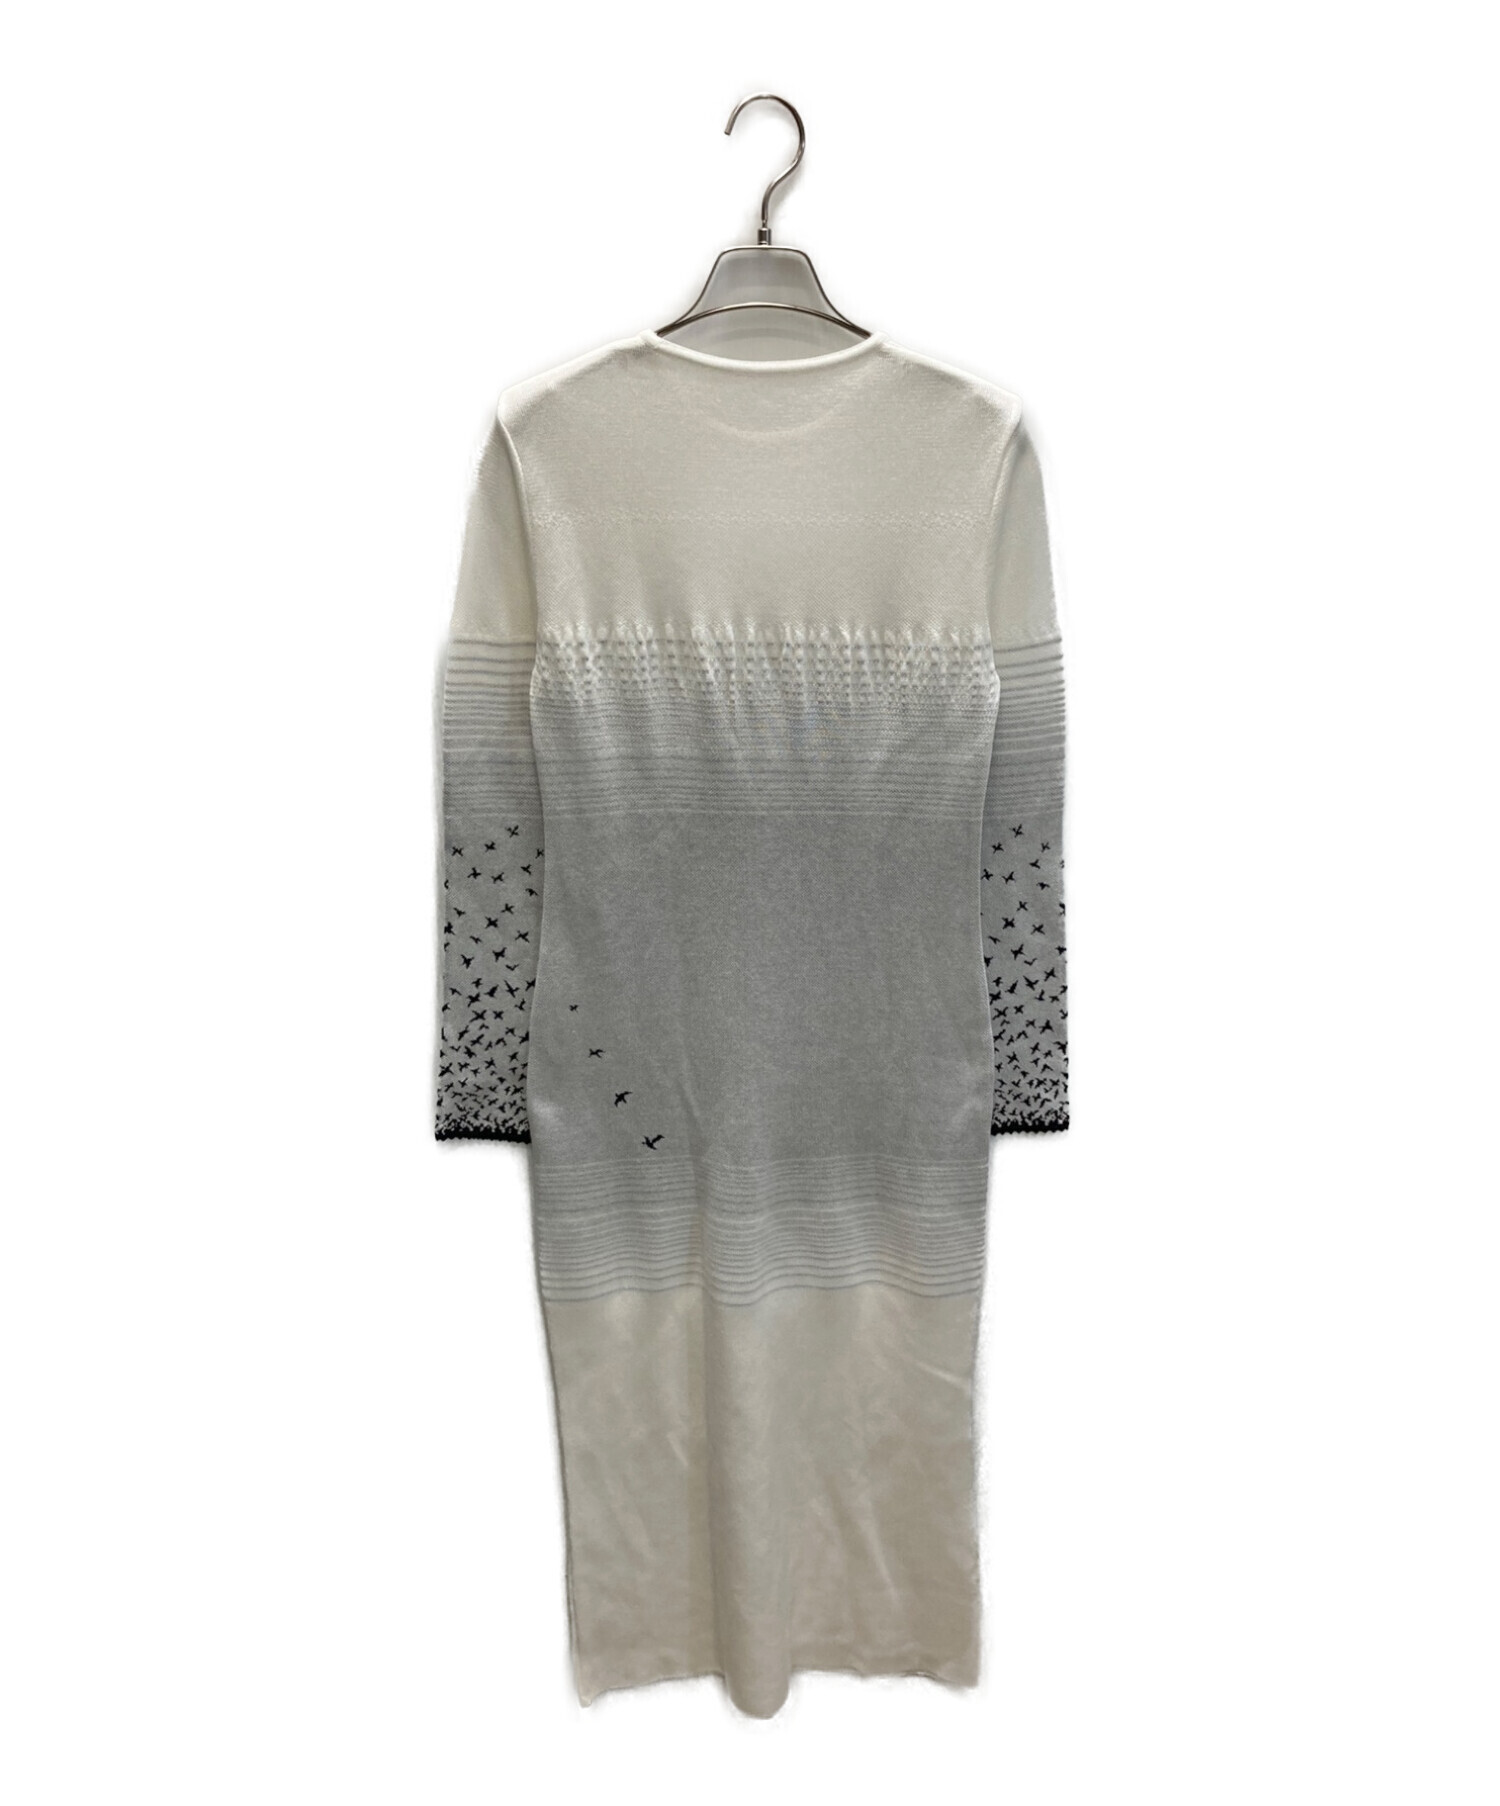 Mame Kurogouchi (マメクロゴウチ) Crane Pattern Jacquard Knitted Dress ホワイト×グレー  サイズ:1